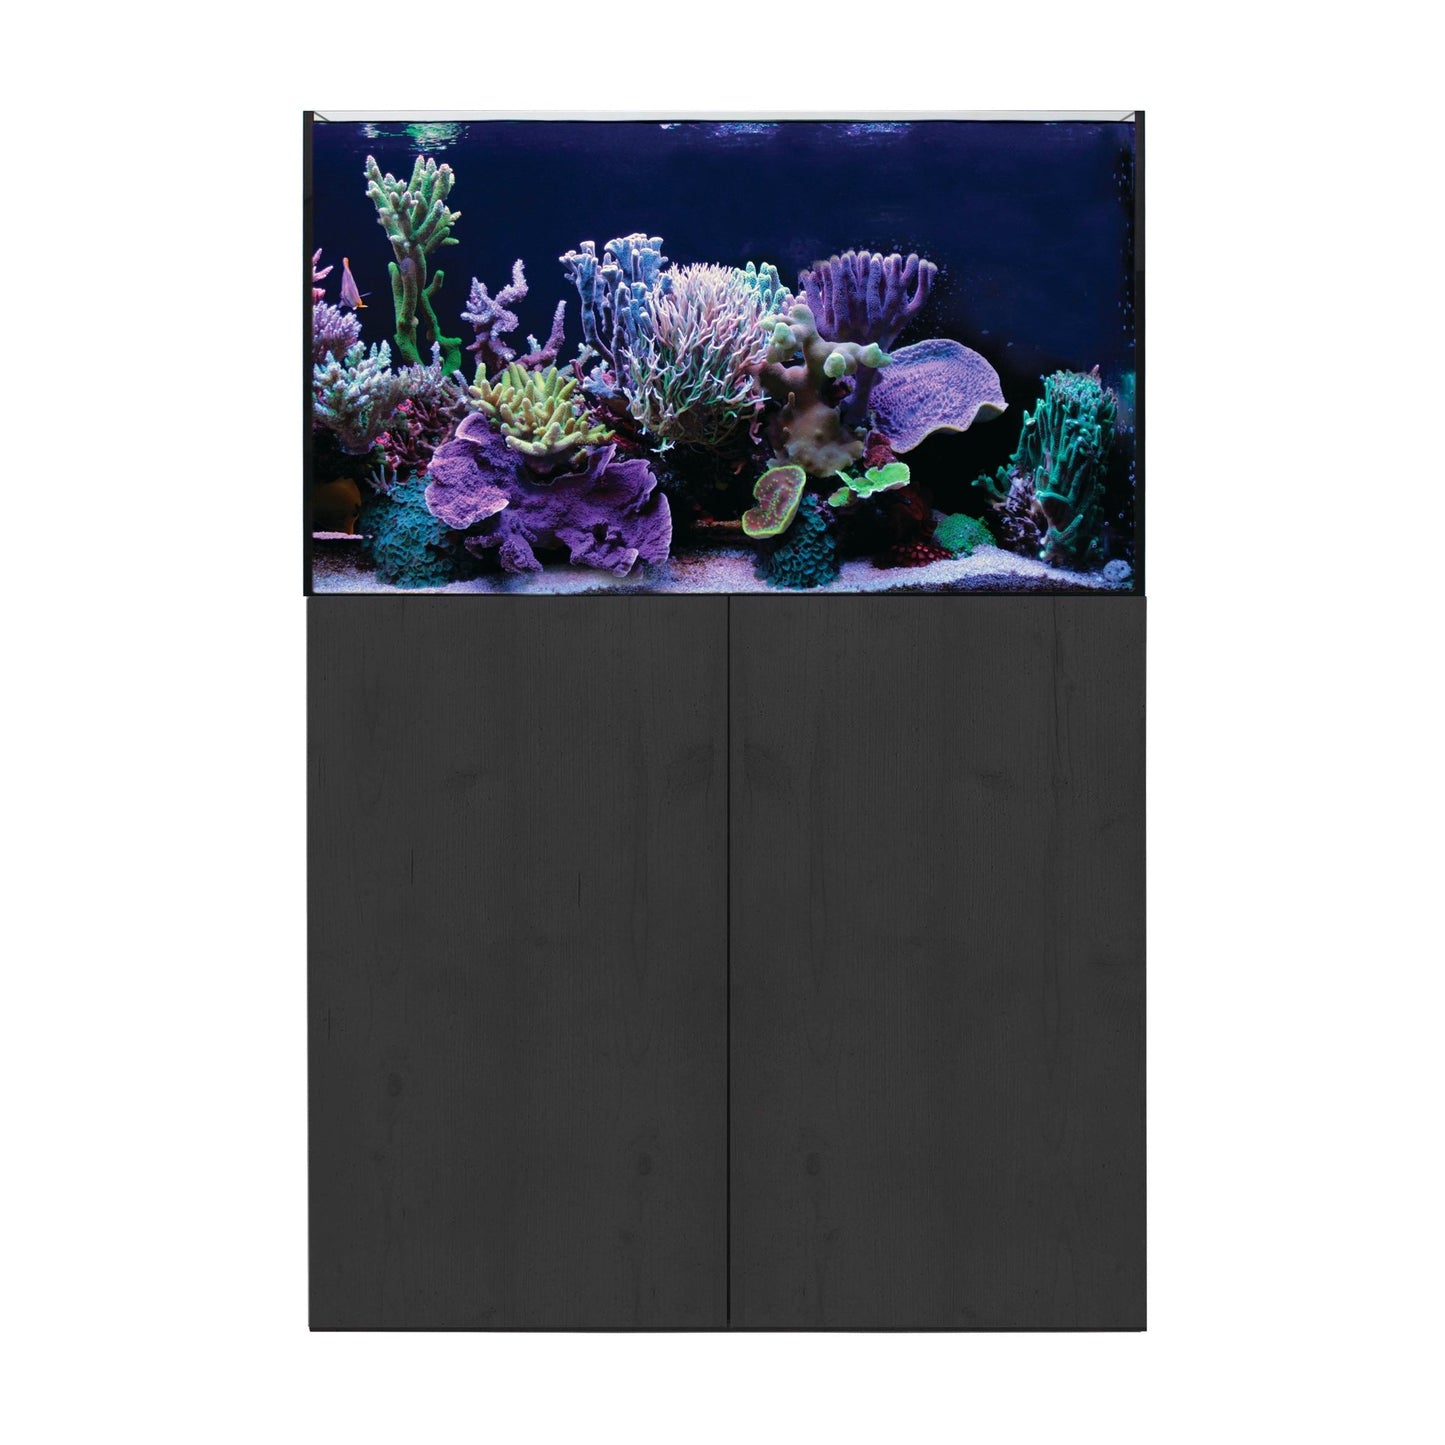 Aqua One ReefSys 255 Aquarium and Cabinet - Black - Charterhouse Aquatics